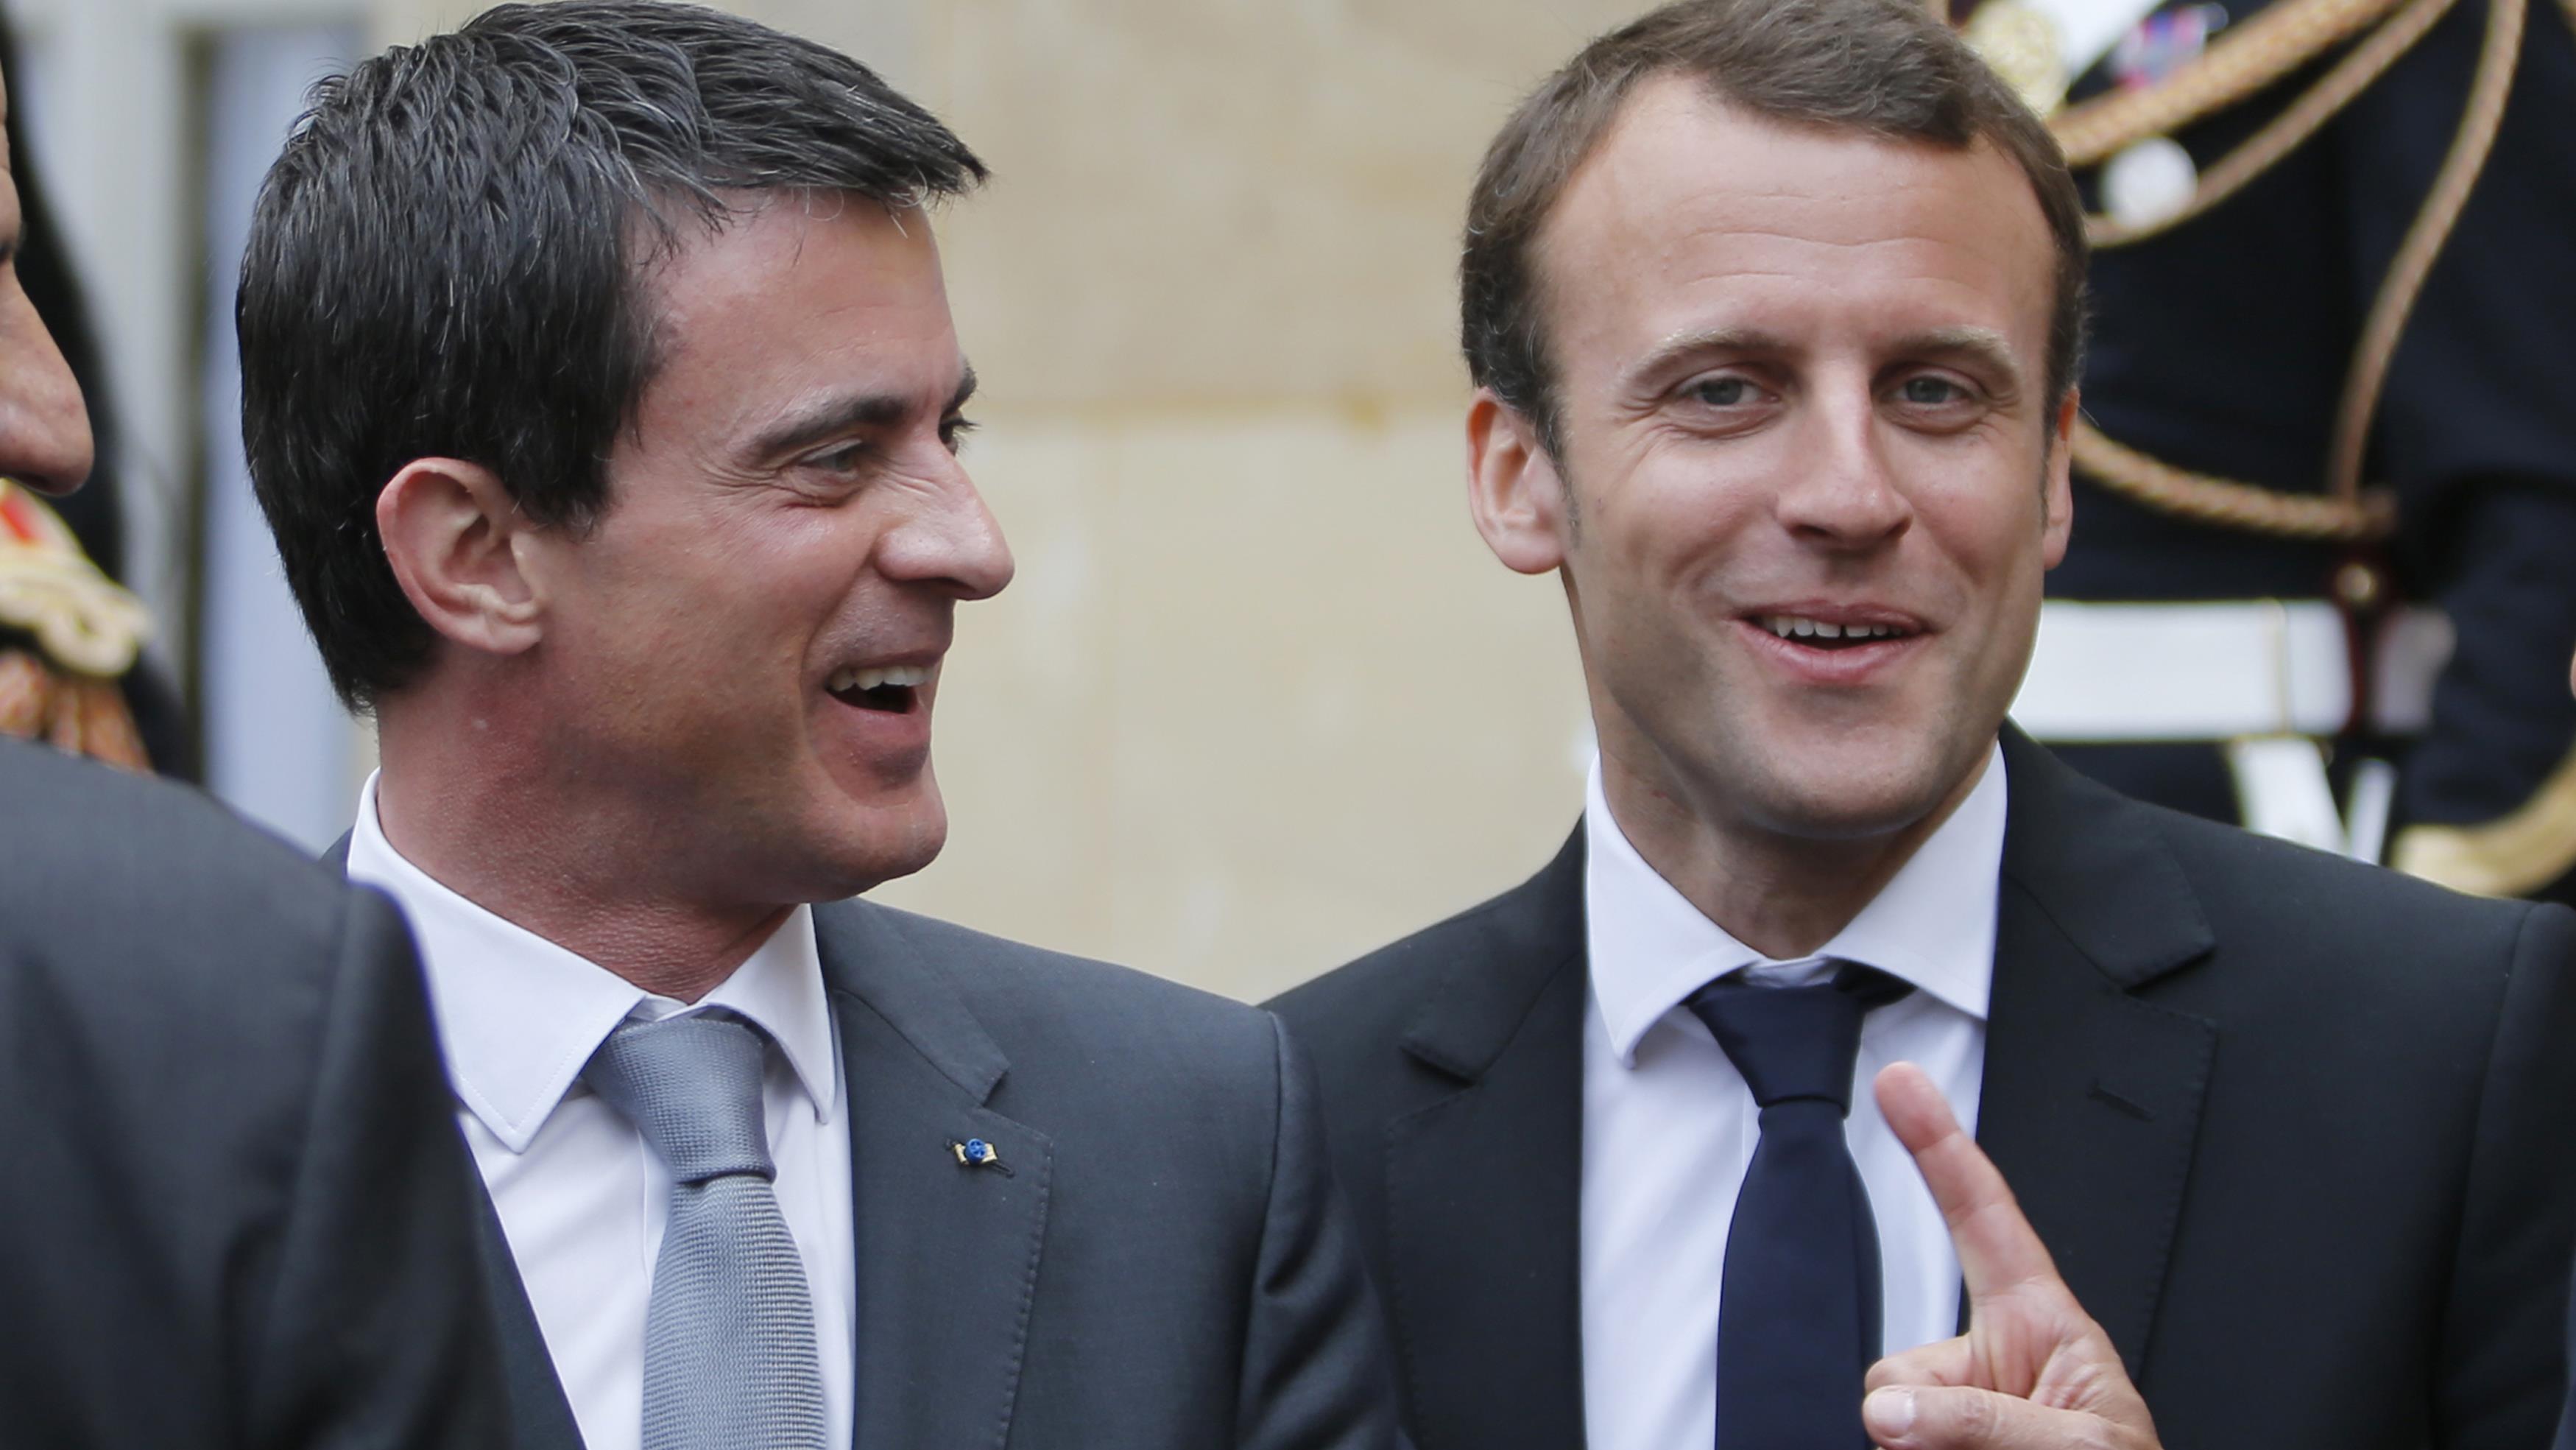 Les socialistes déchirés : Valls votera Macron pour battre Le Pen